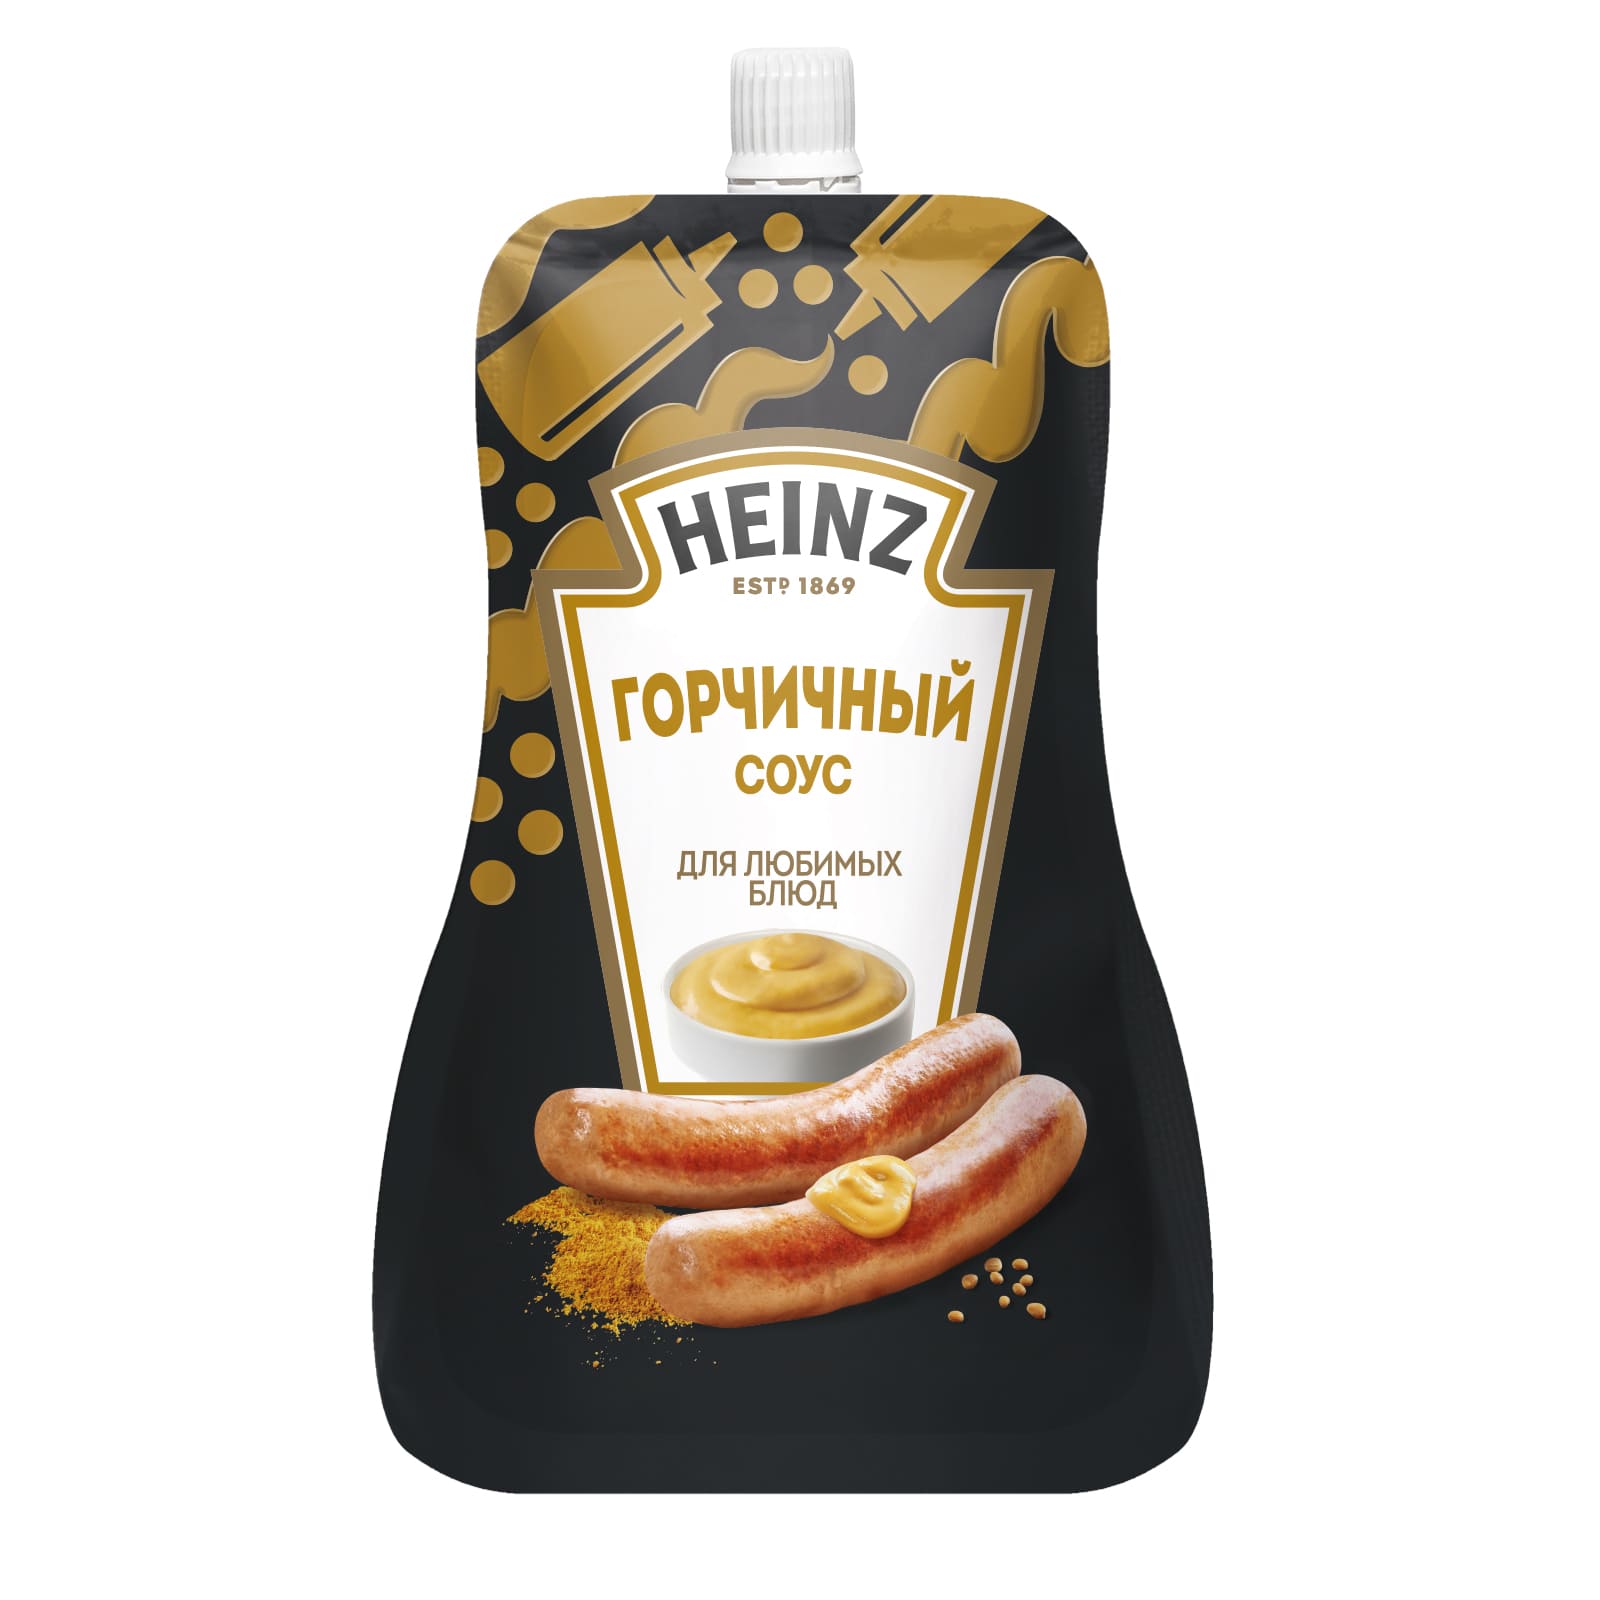 Соус Heinz горчичный, 200 г - купить в Мегамаркет Спб, цена на Мегамаркет